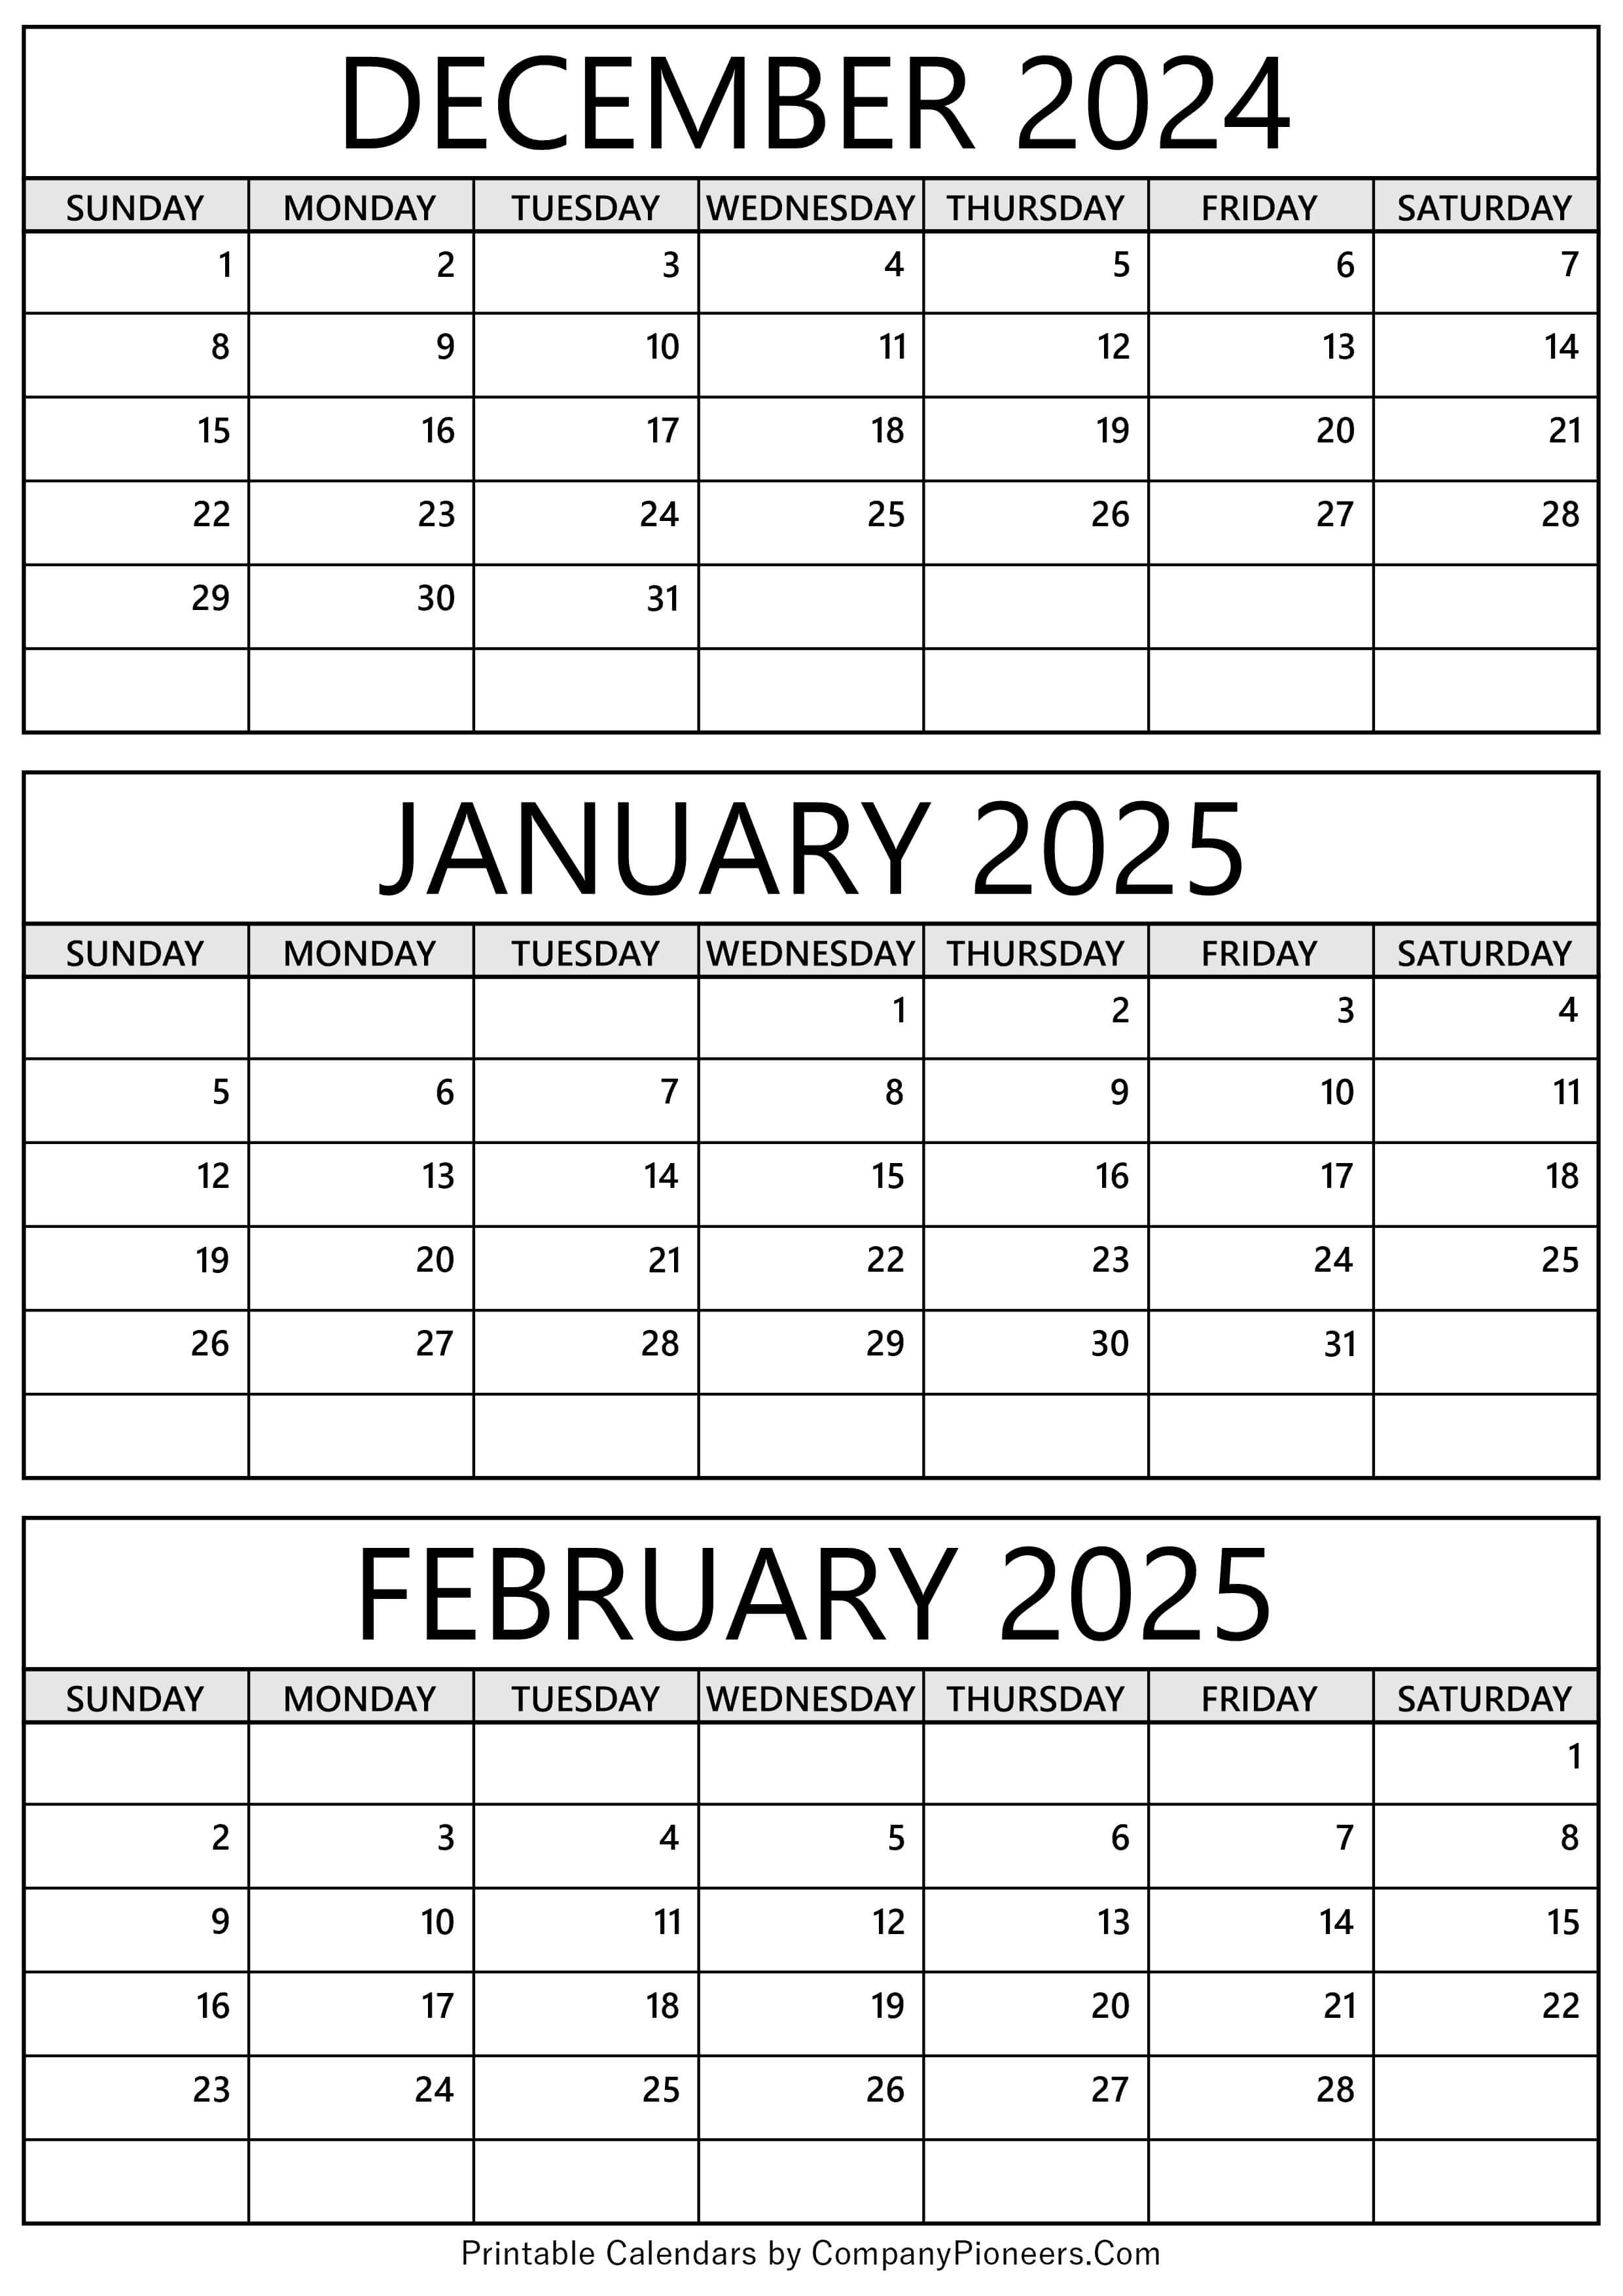 December 2024 to February 2025 Calendar